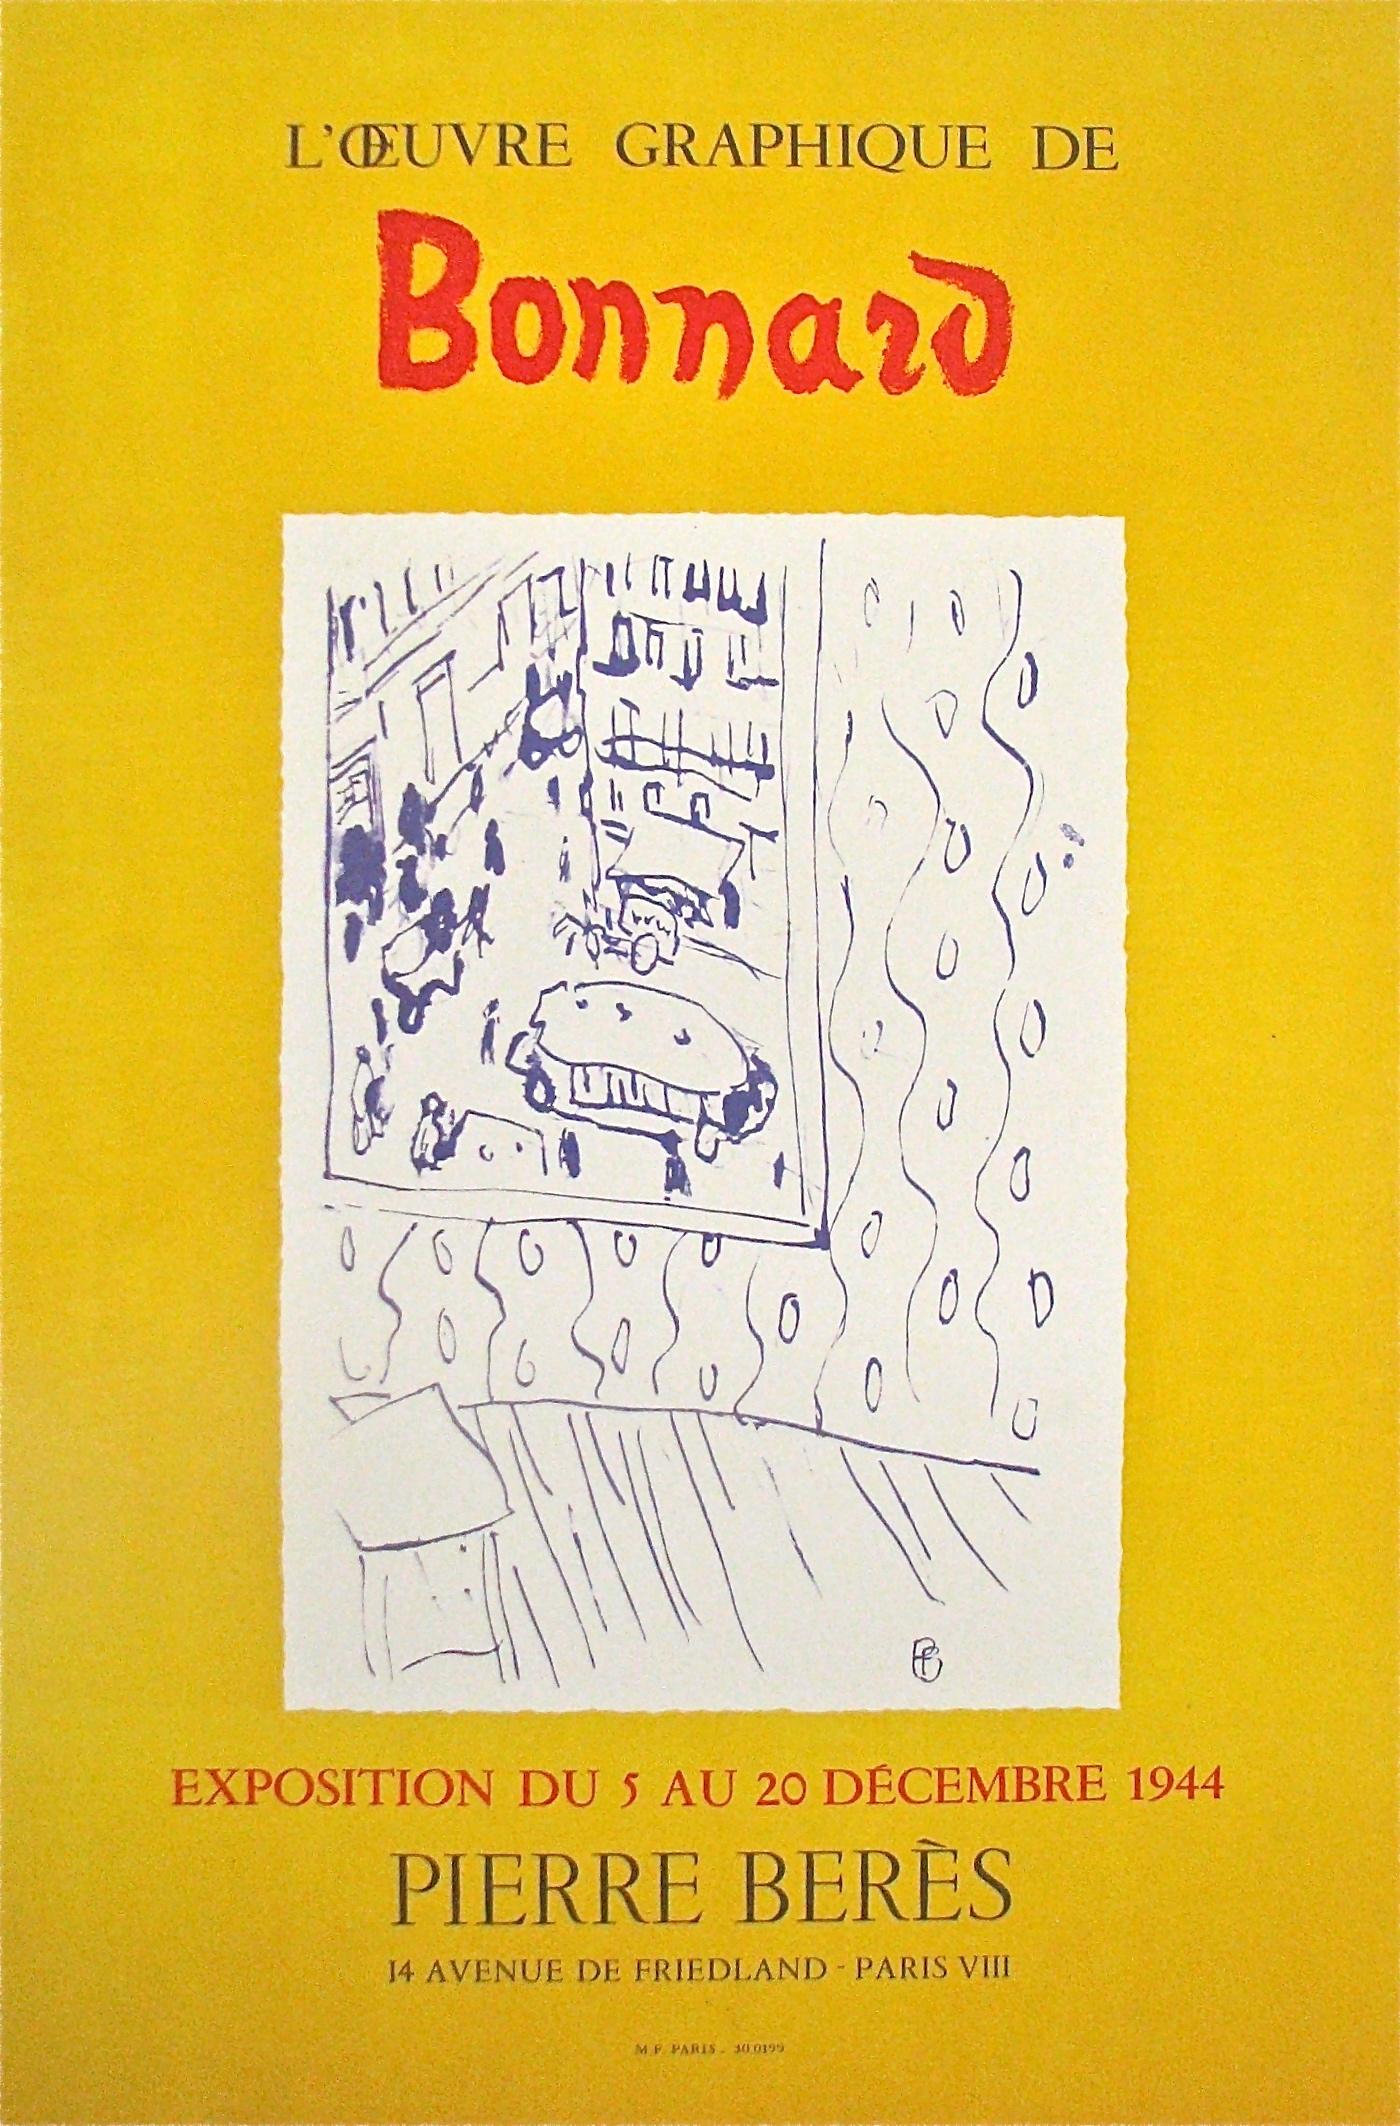 Print (after) Pierre Bonnard - « L'Oeuvre Graphique de Bonnard » - Galerie Pierre Bers, (d'après) Pierre Bonnard